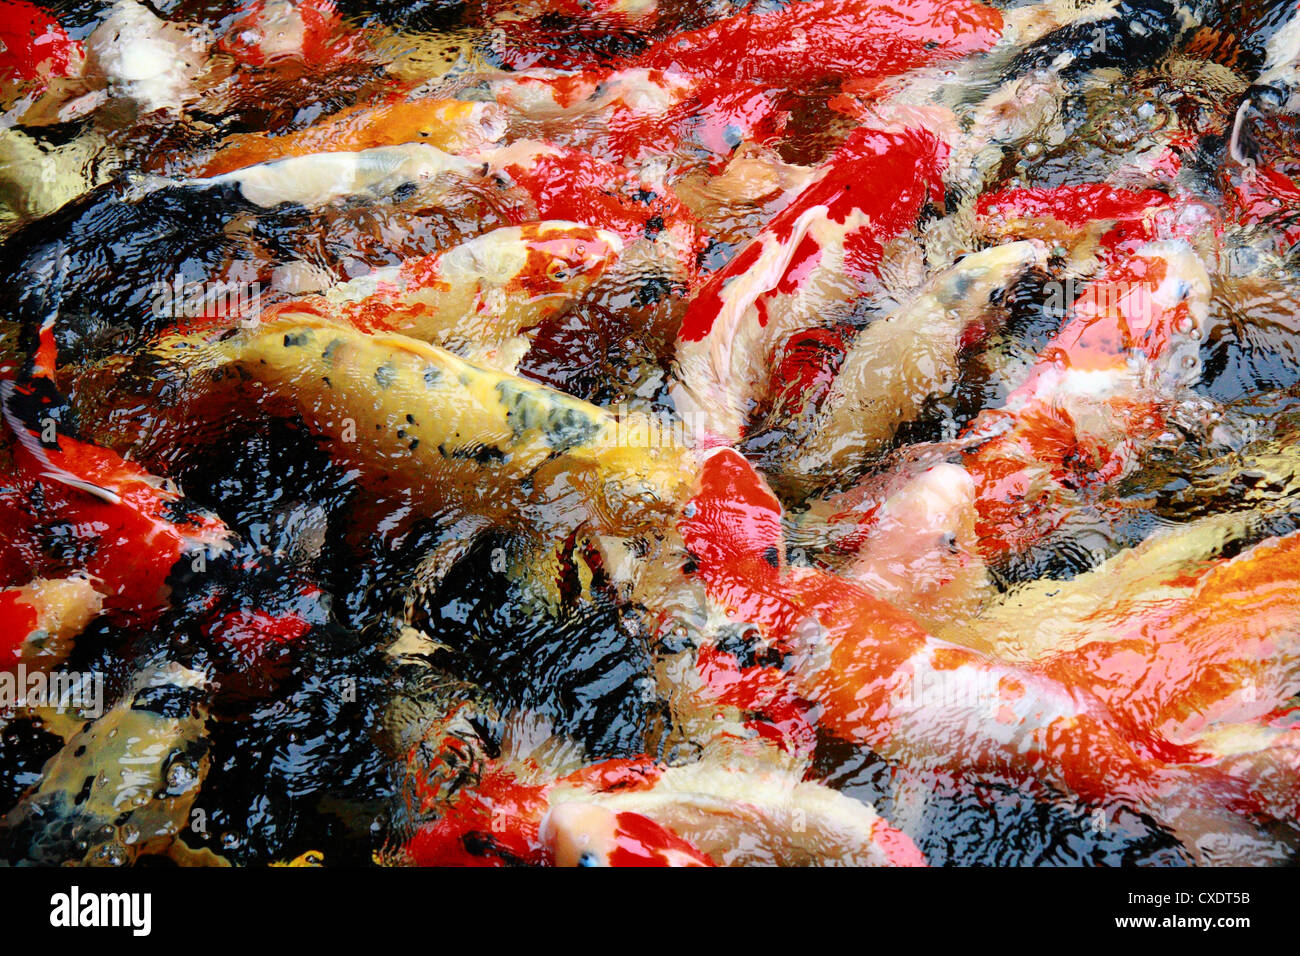 Carpa pesci in laghetto pieno frame Foto Stock